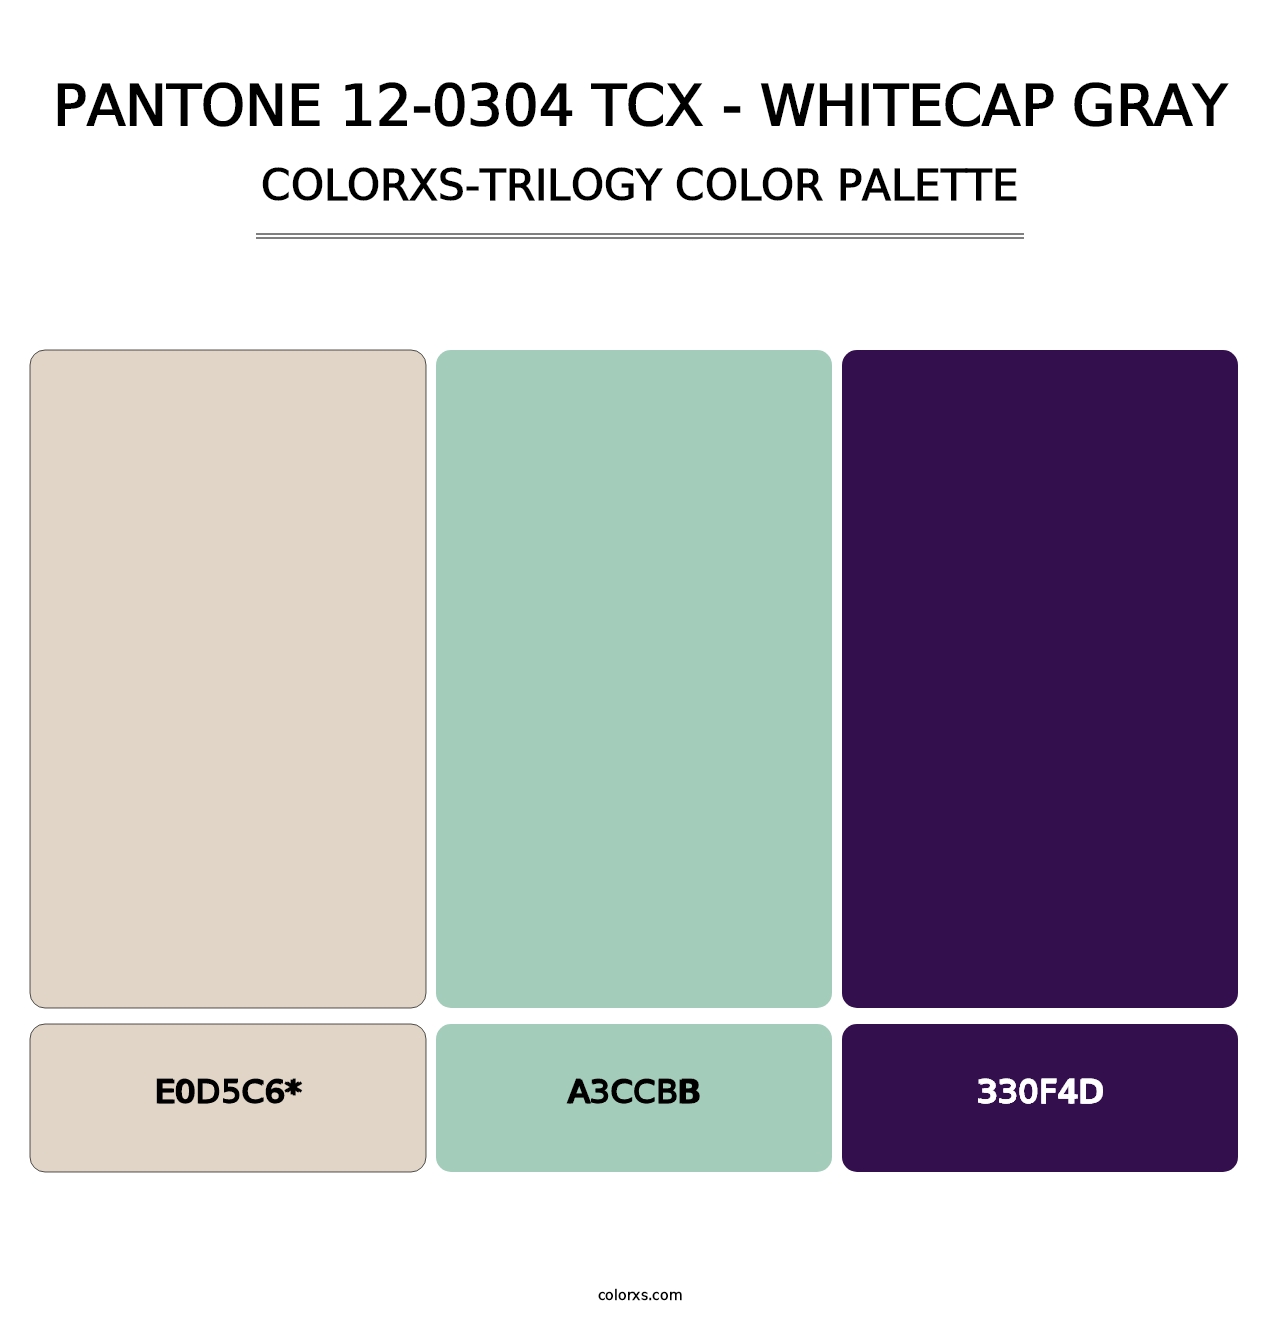 PANTONE 12-0304 TCX - Whitecap Gray - Colorxs Trilogy Palette